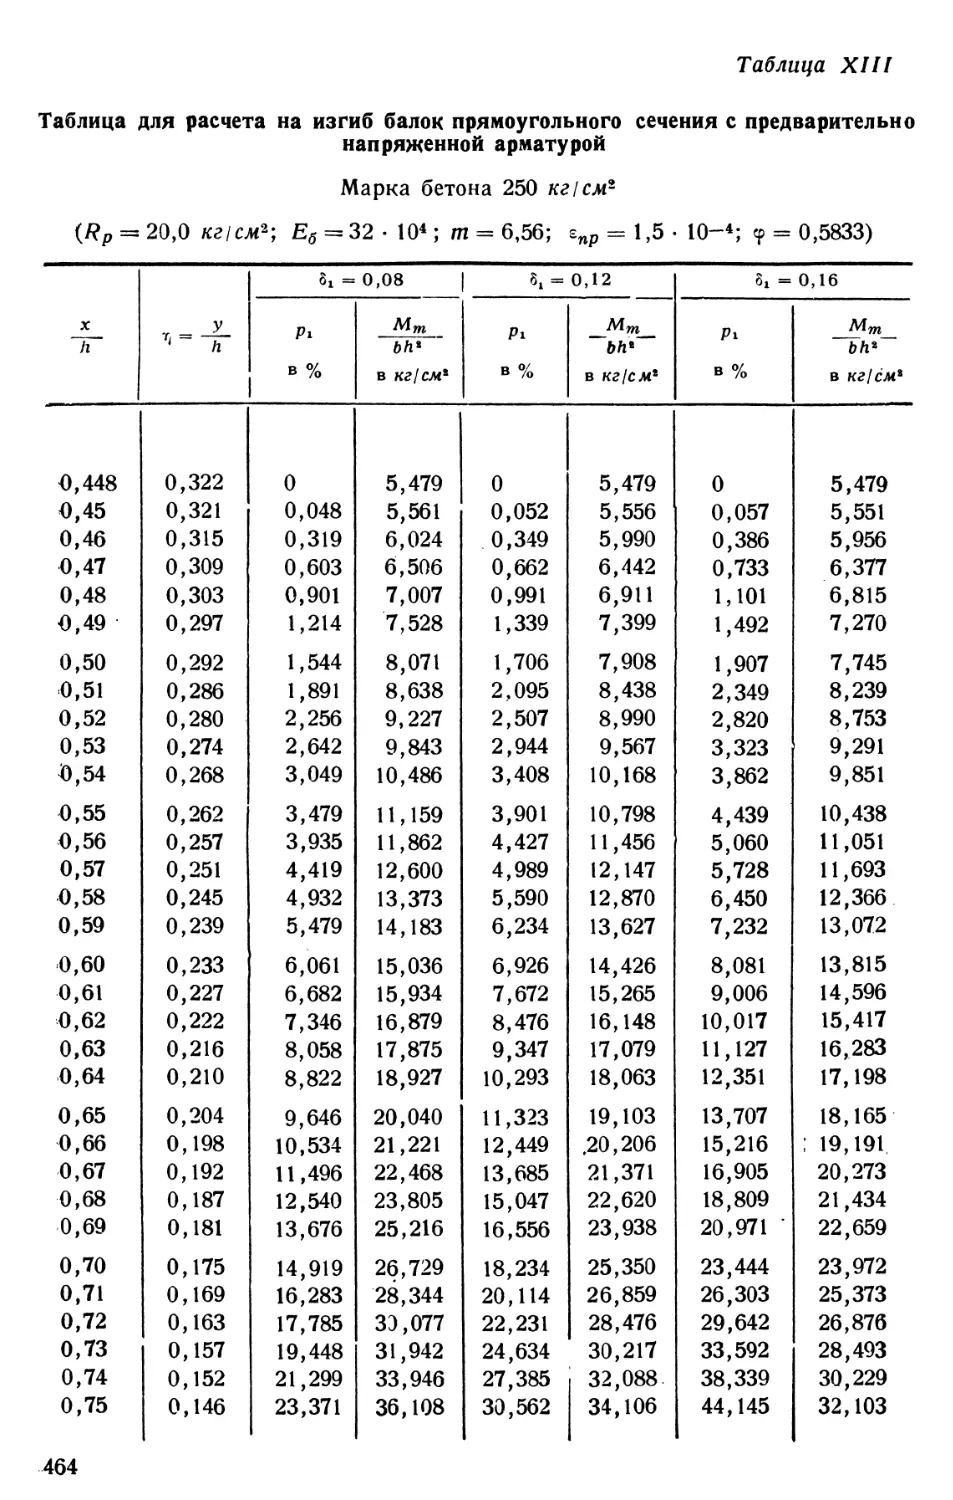 X.IIа. Таблица для расчета на изгиб балок прямоугольного сечения с предварительно напряженной арматурой. Марка бетона 250 кг/см2